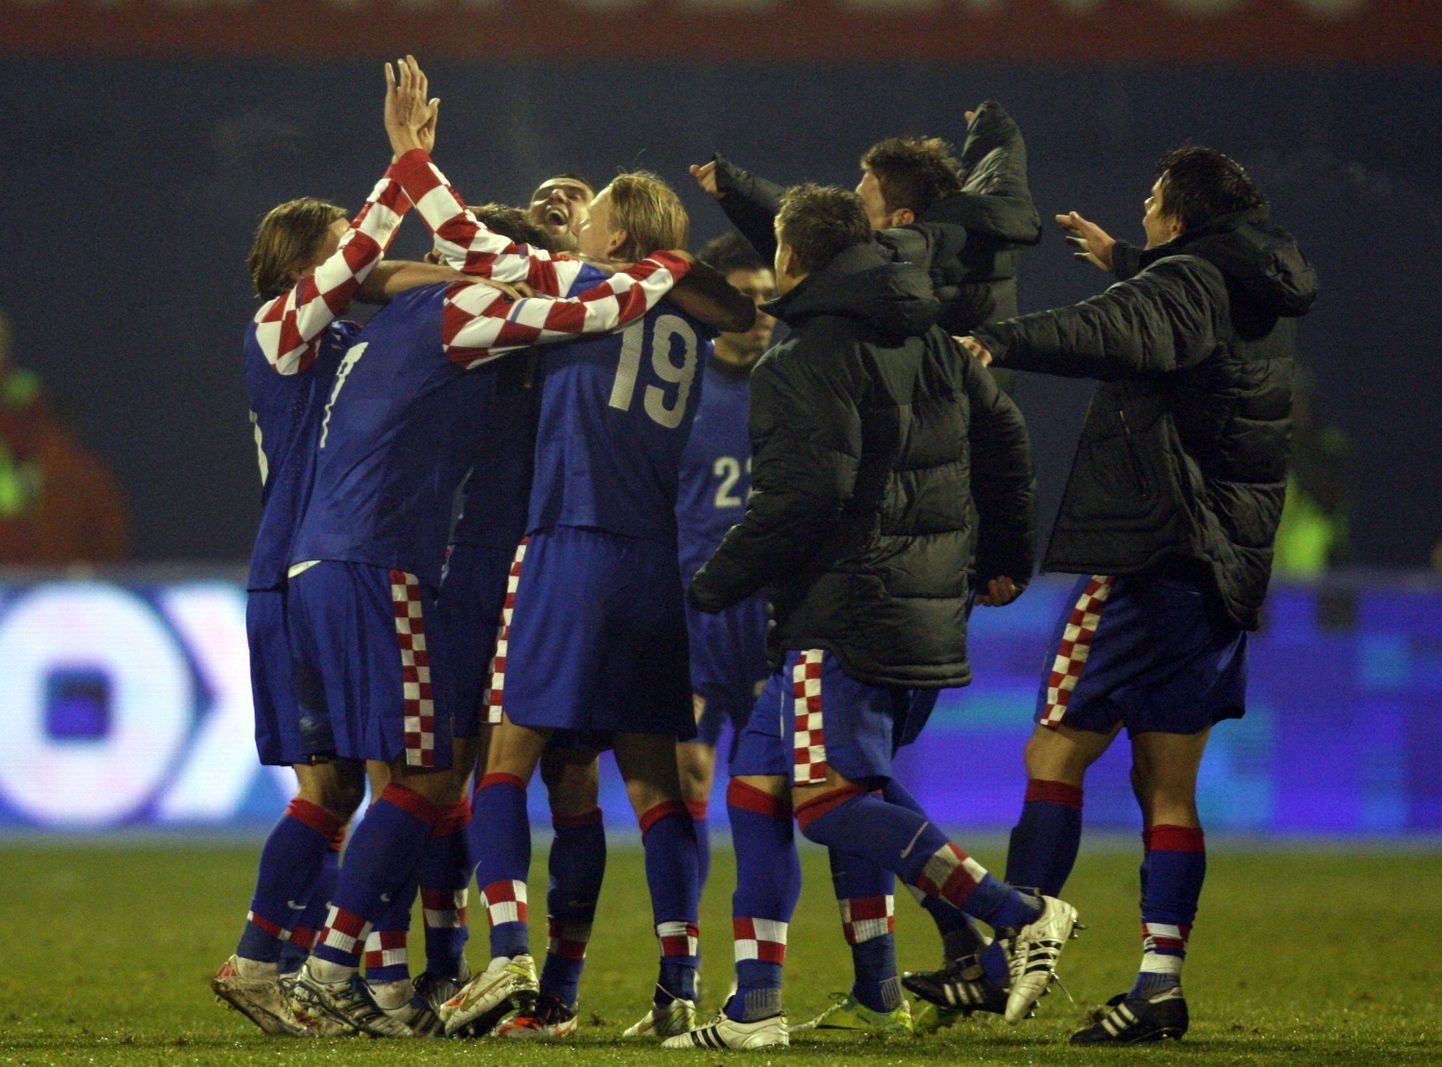 Horvaatia koondis edasipääsu üle rõõmustamas.